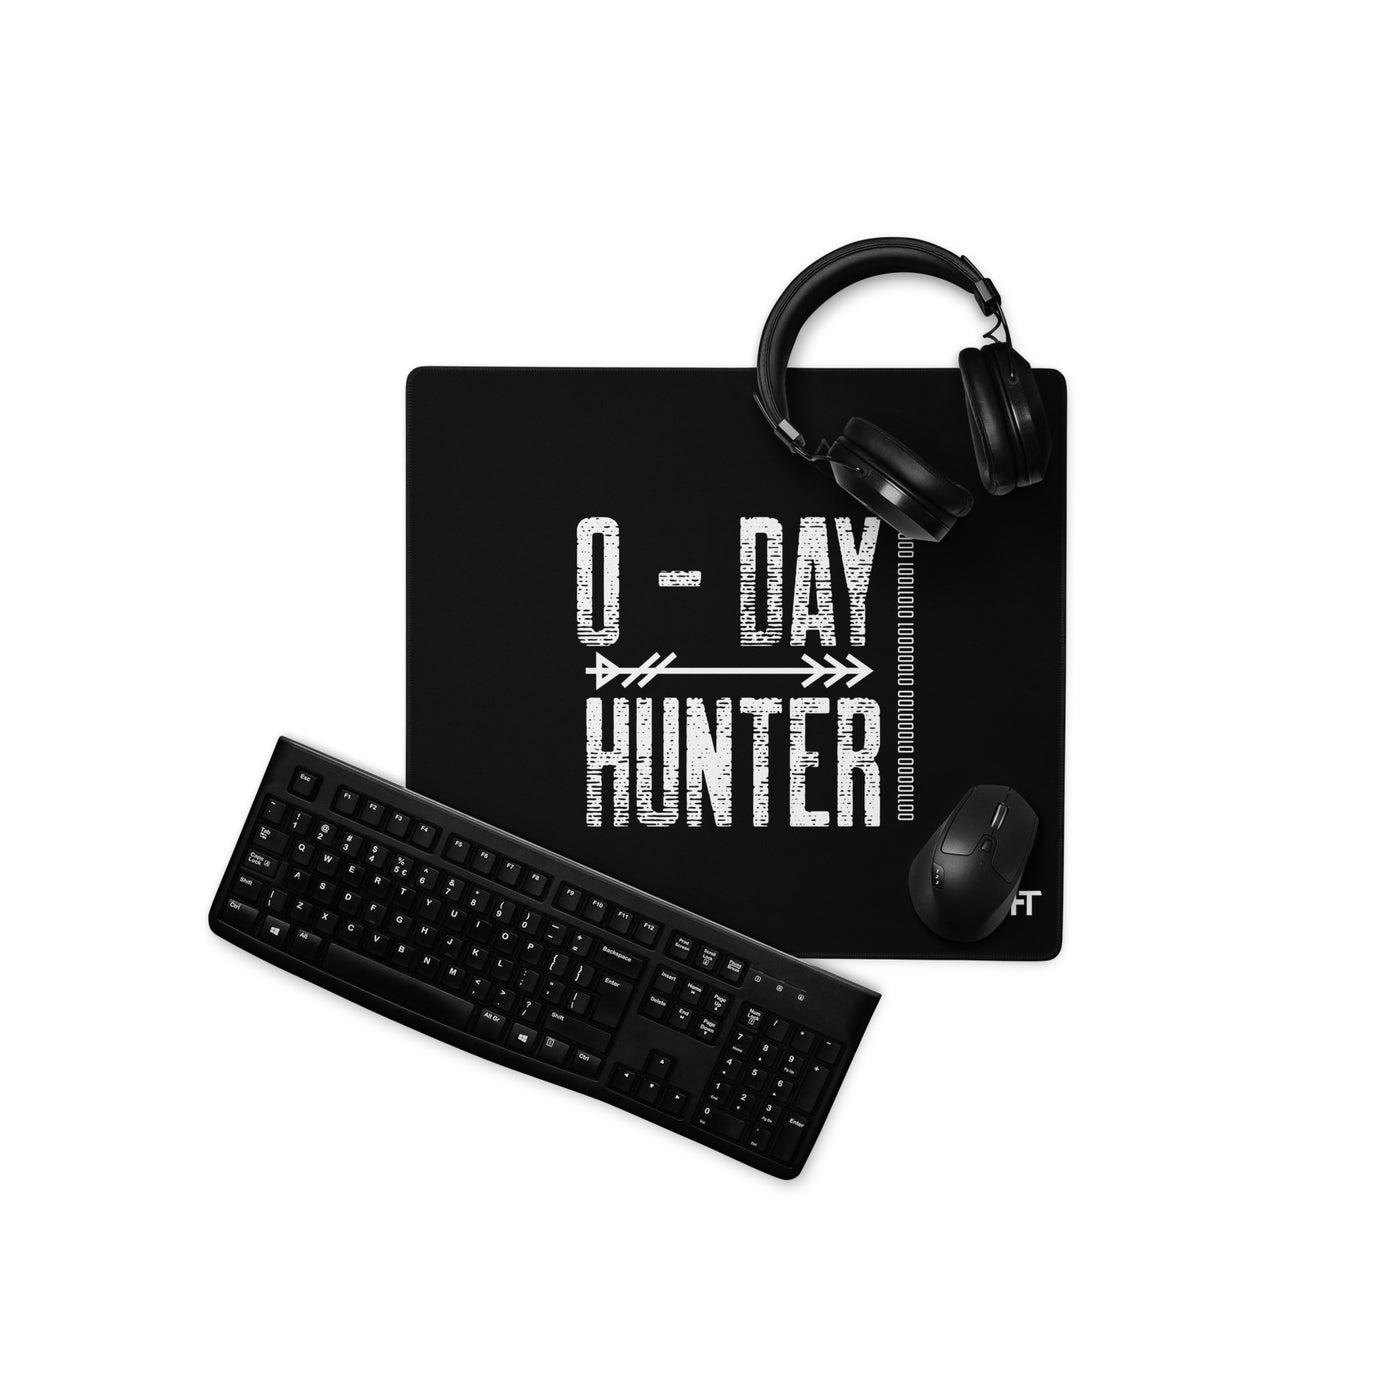 0-day hunter V8 - Desk Mat